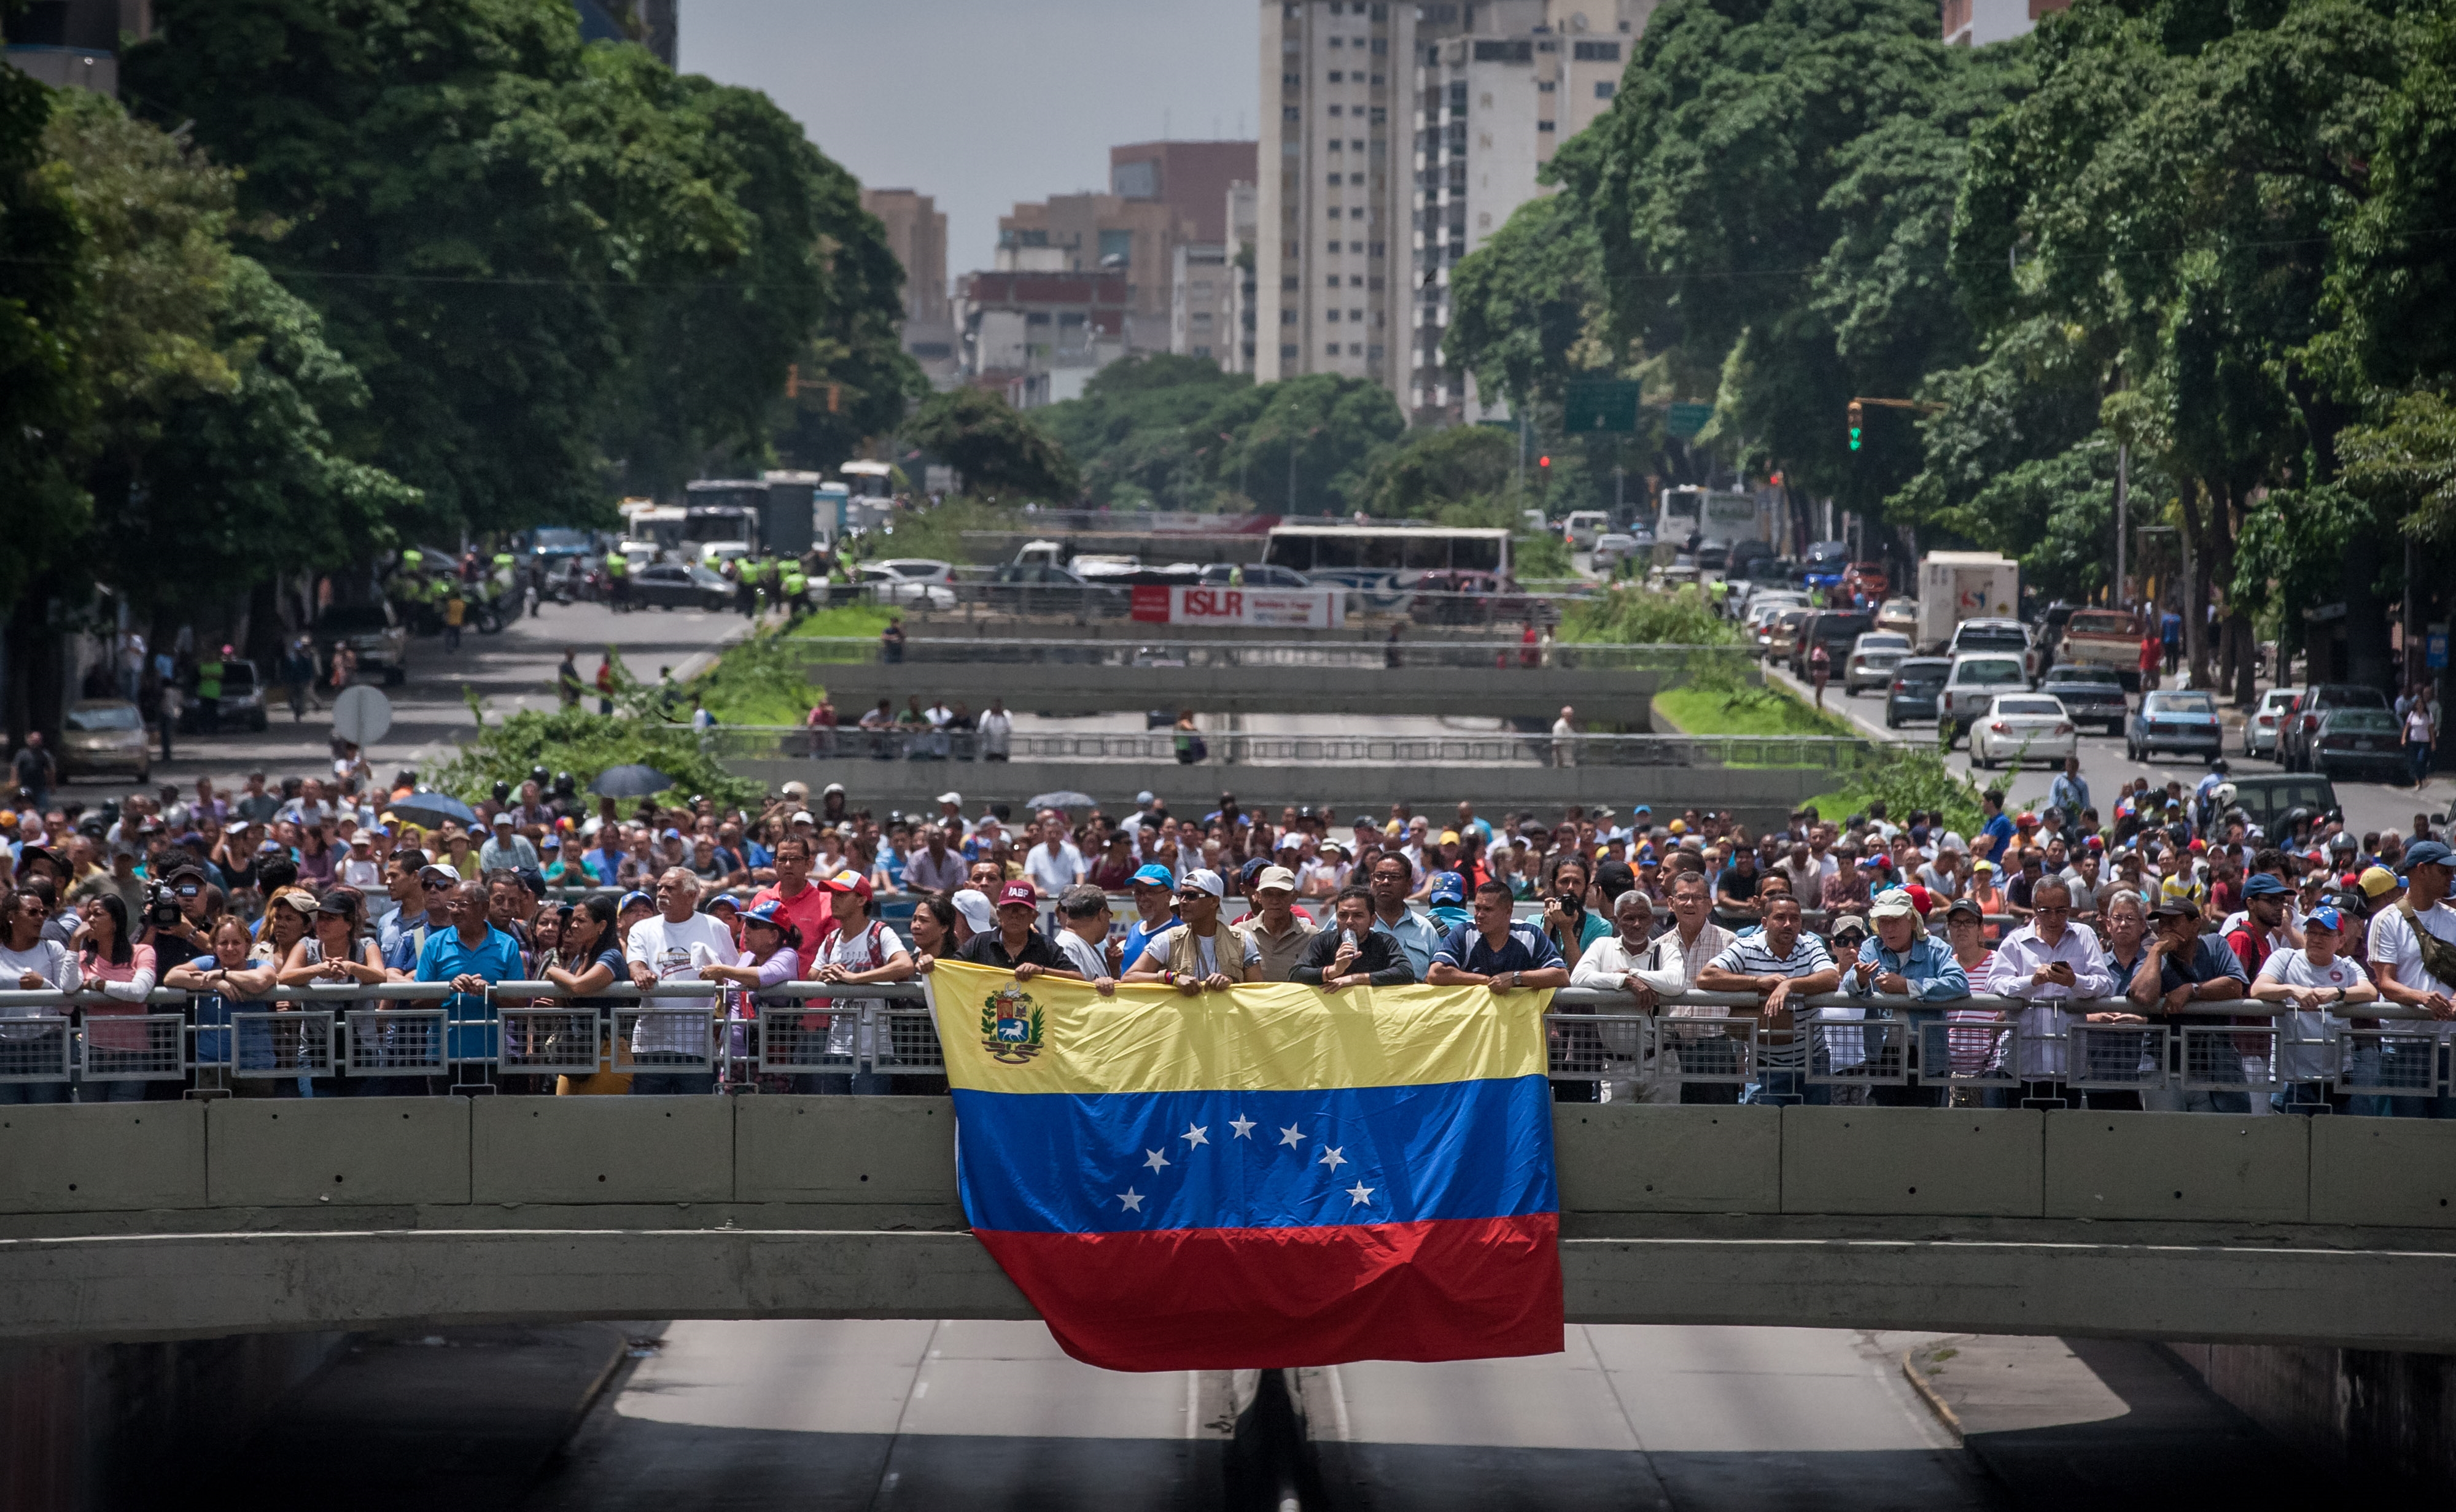 Condena EU uso de fuerza contra oposición en Venezuela